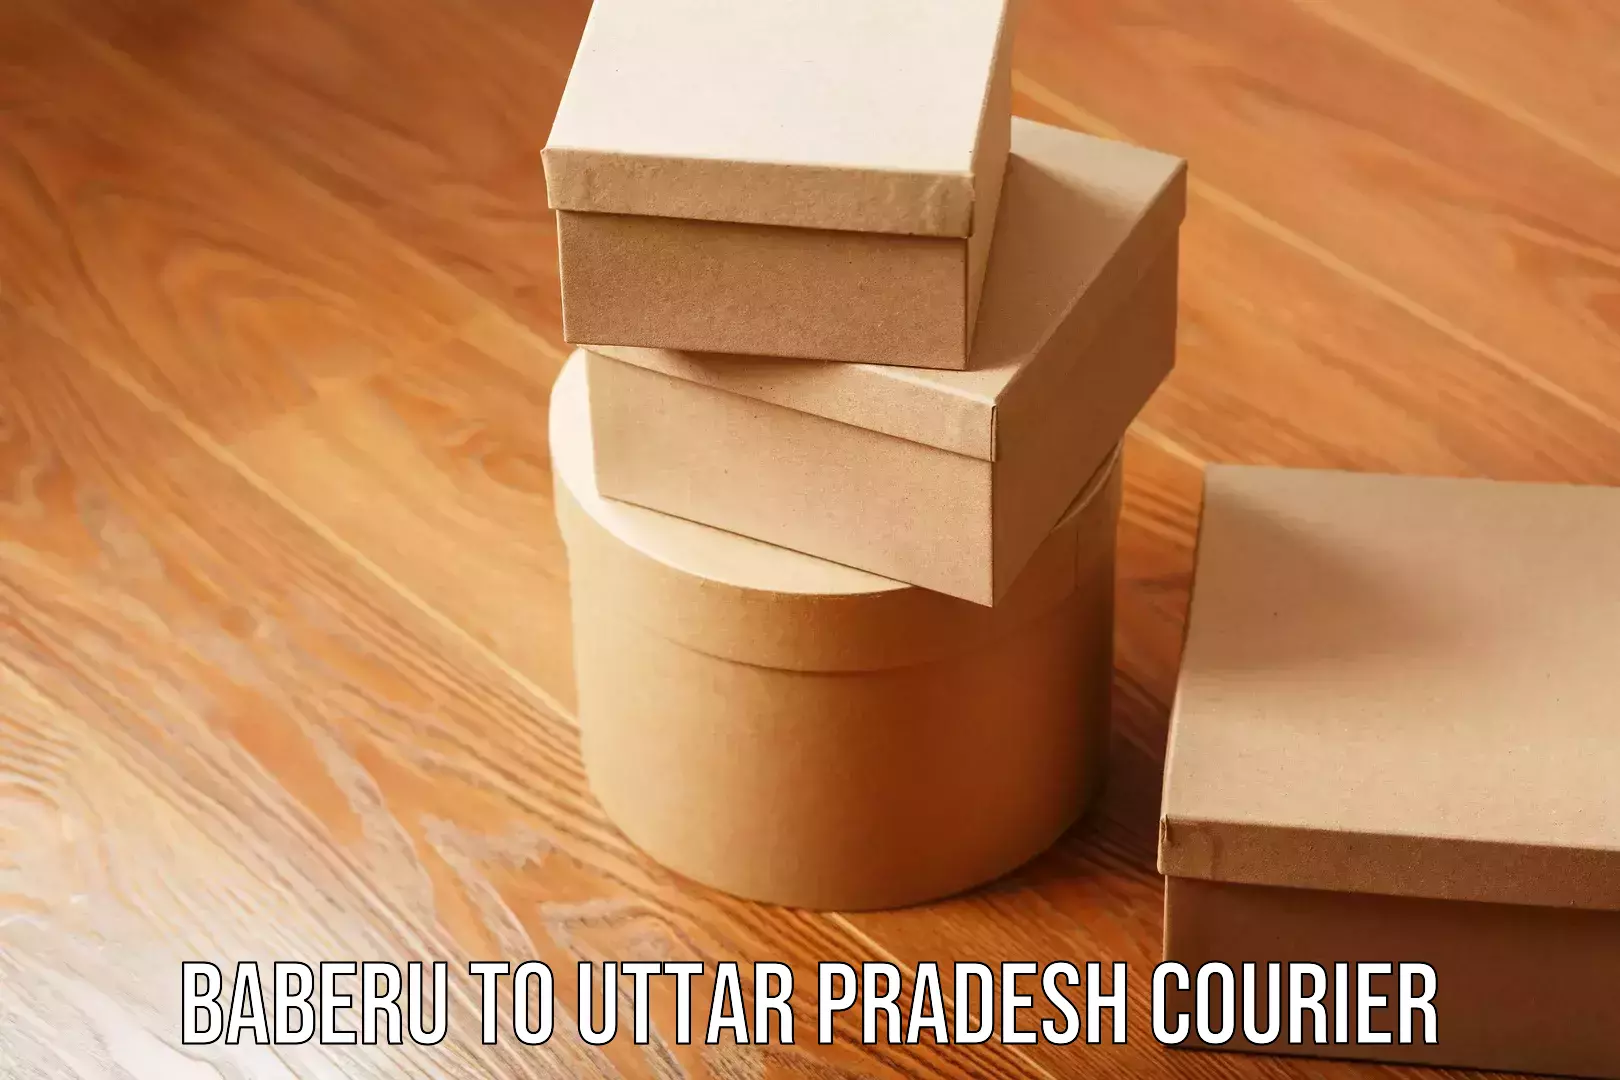 Cargo courier service Baberu to Uttar Pradesh